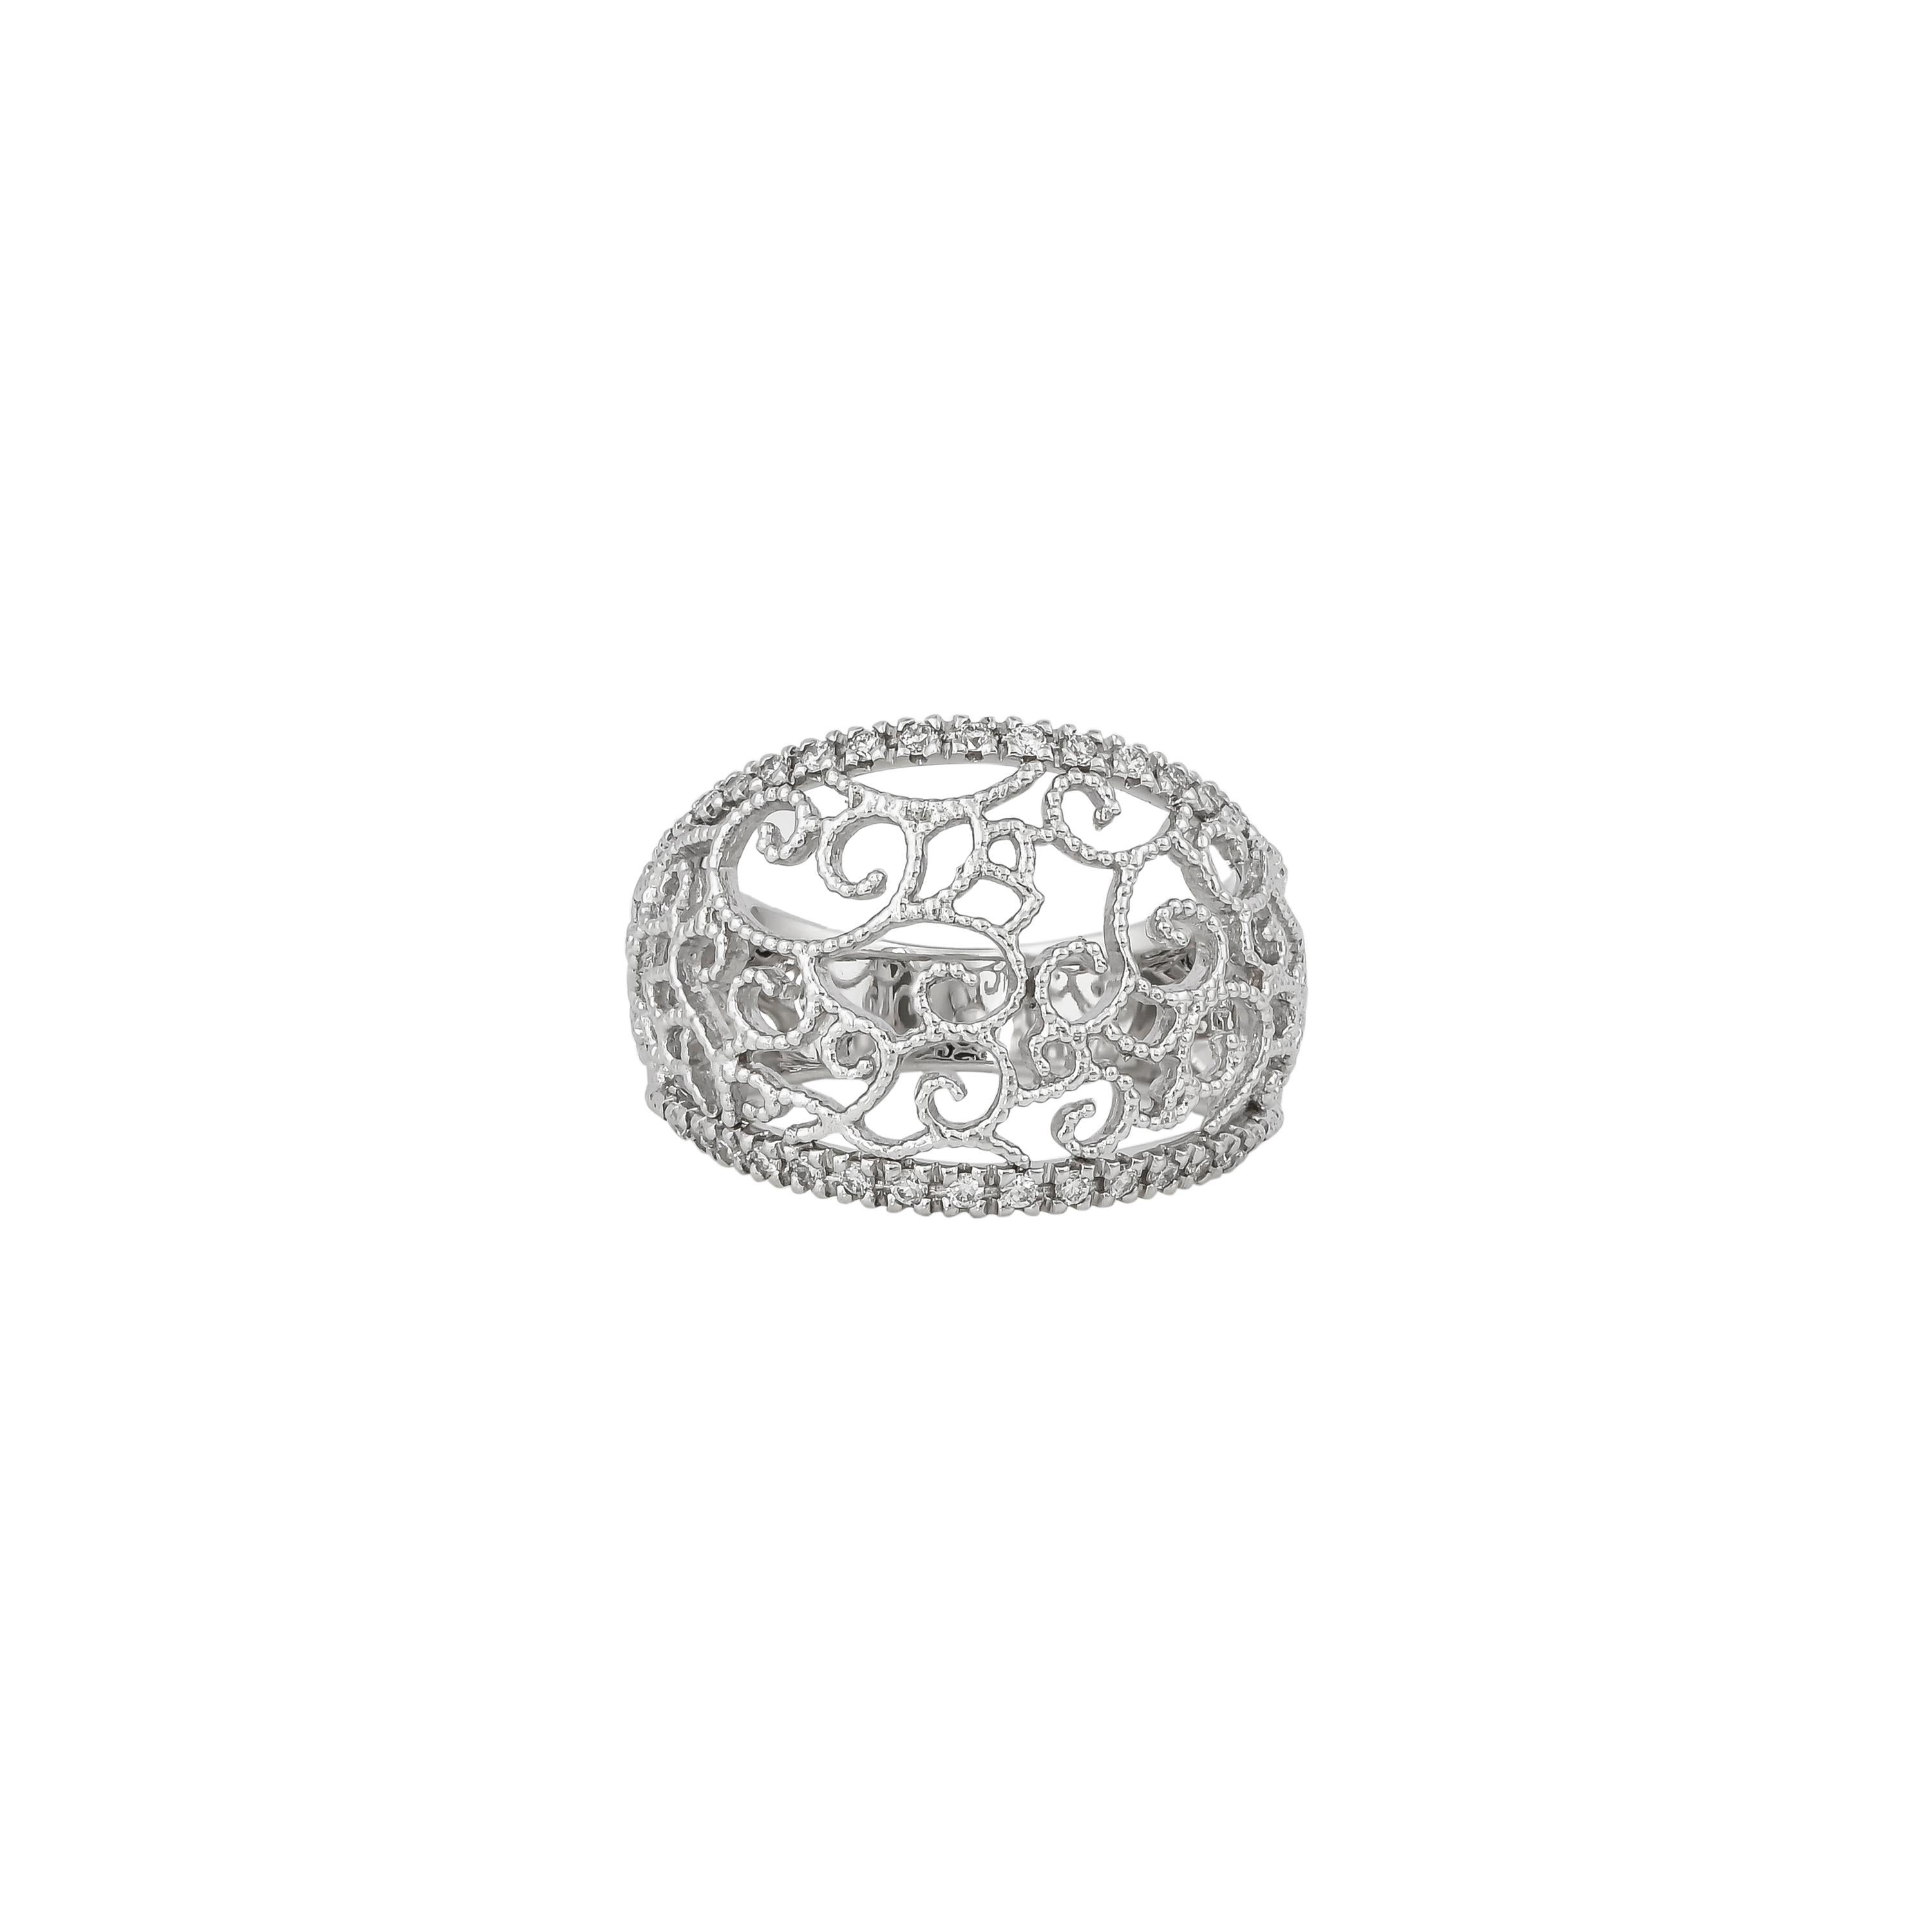 0.304 Carat Diamond Ring in 18 Karat White Gold